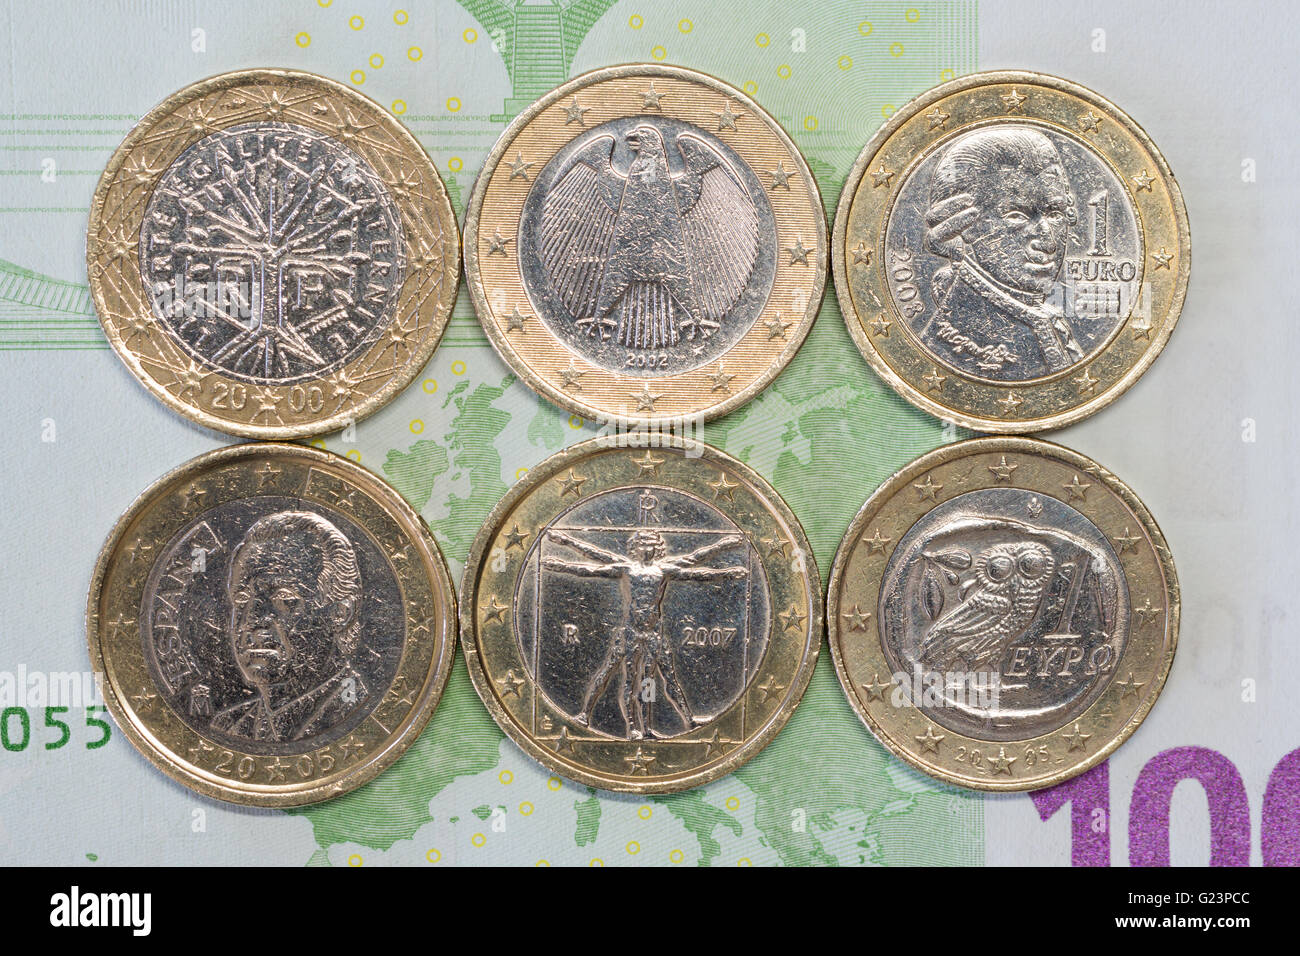 1 € Münzen Euro für drei nördlichen und drei südeuropäische Länder auf einer 100 Euro-banknote Stockfoto